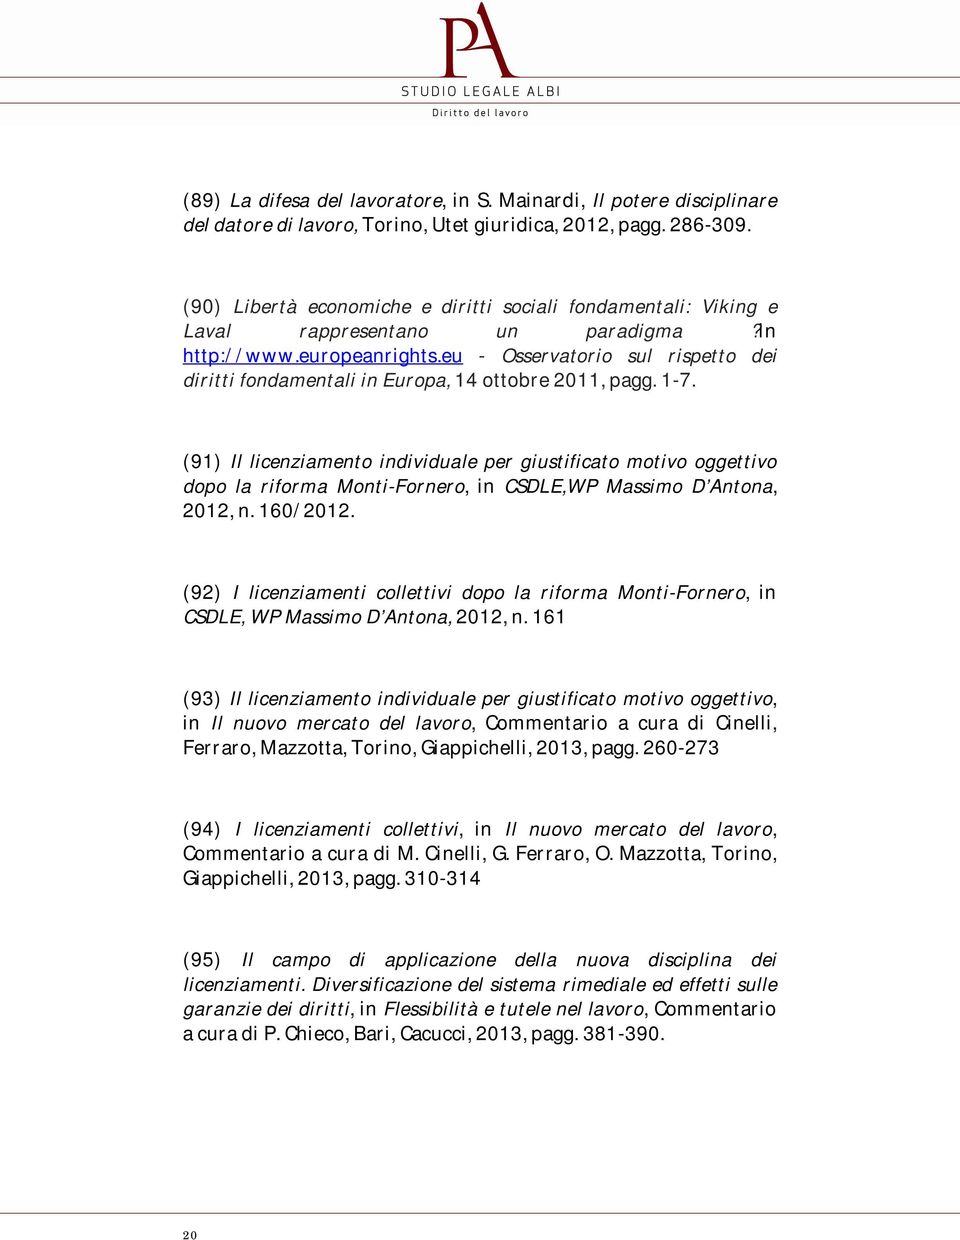 eu - Osservatorio sul rispetto dei diritti fondamentali in Europa, 14 ottobre 2011, pagg. 1-7.